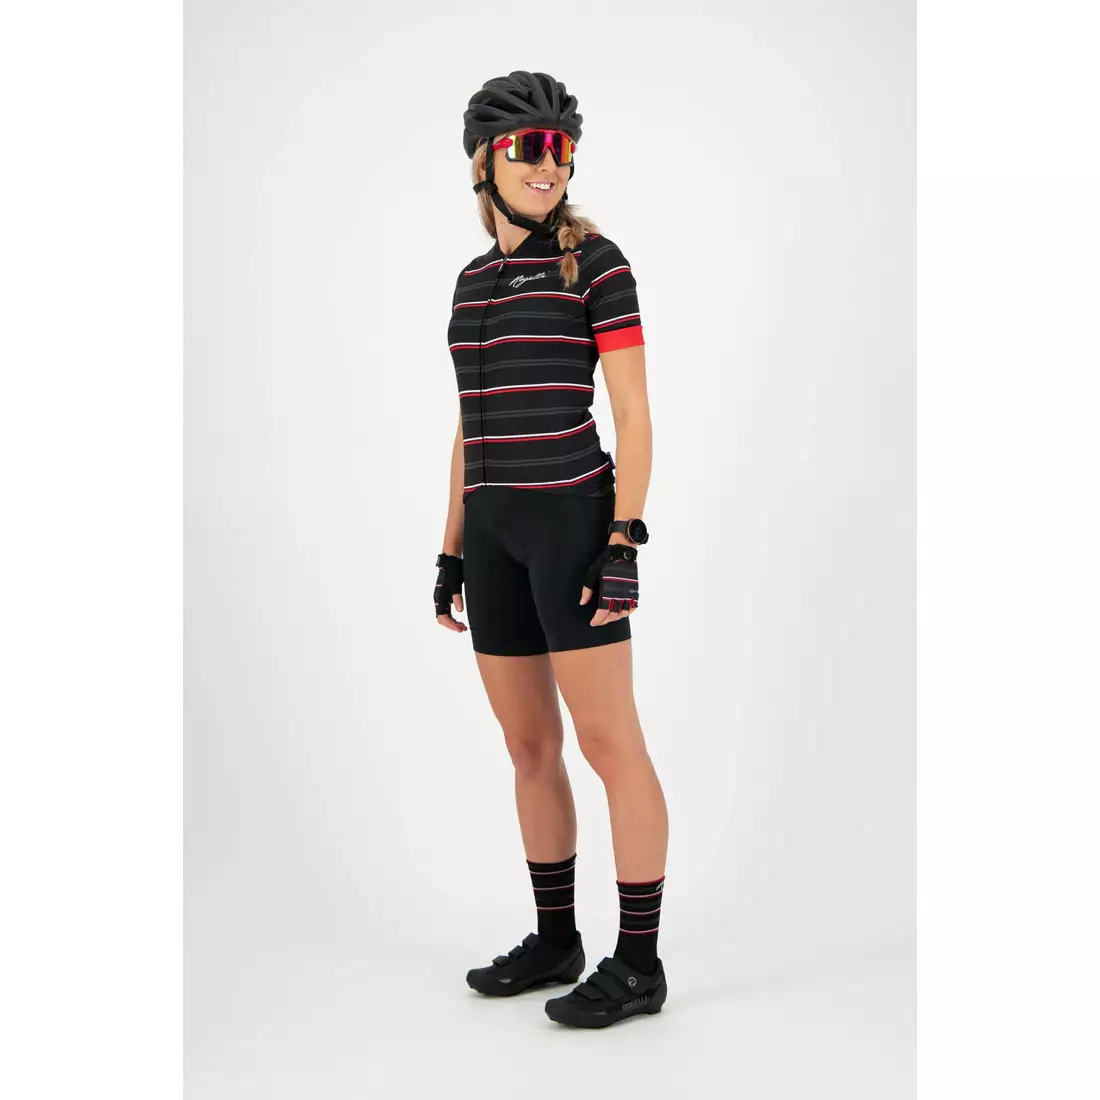 ROGELLI dámský cyklistický dres STRIPE black 010.146